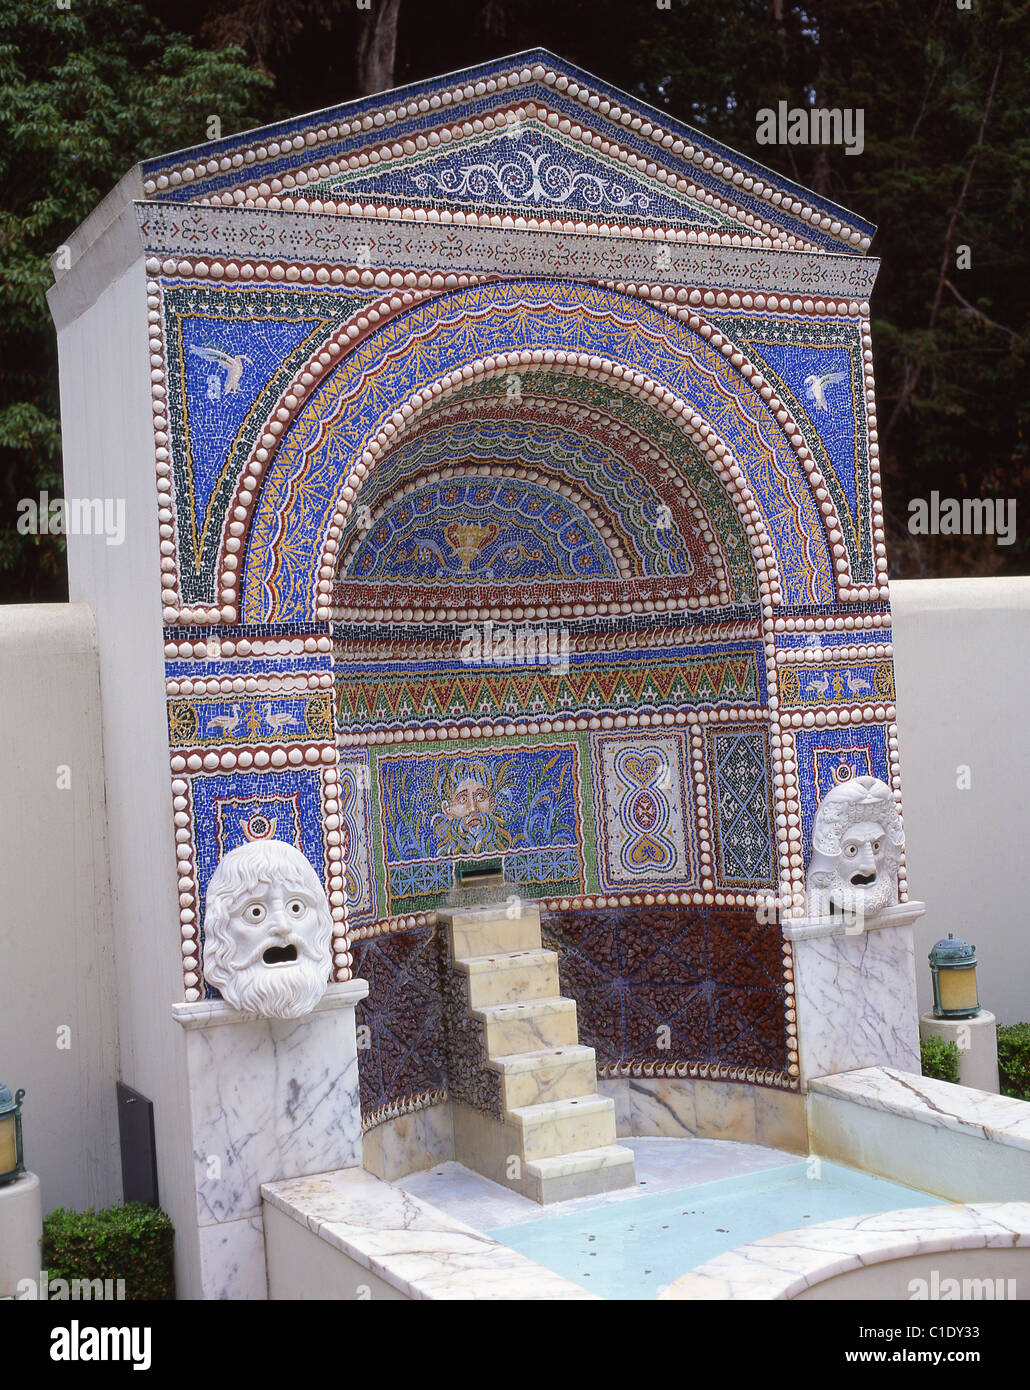 Fontaine en mosaïque, East Garden, Paul Getty Museum, Malibu, Californie, États-Unis d'Amérique Banque D'Images